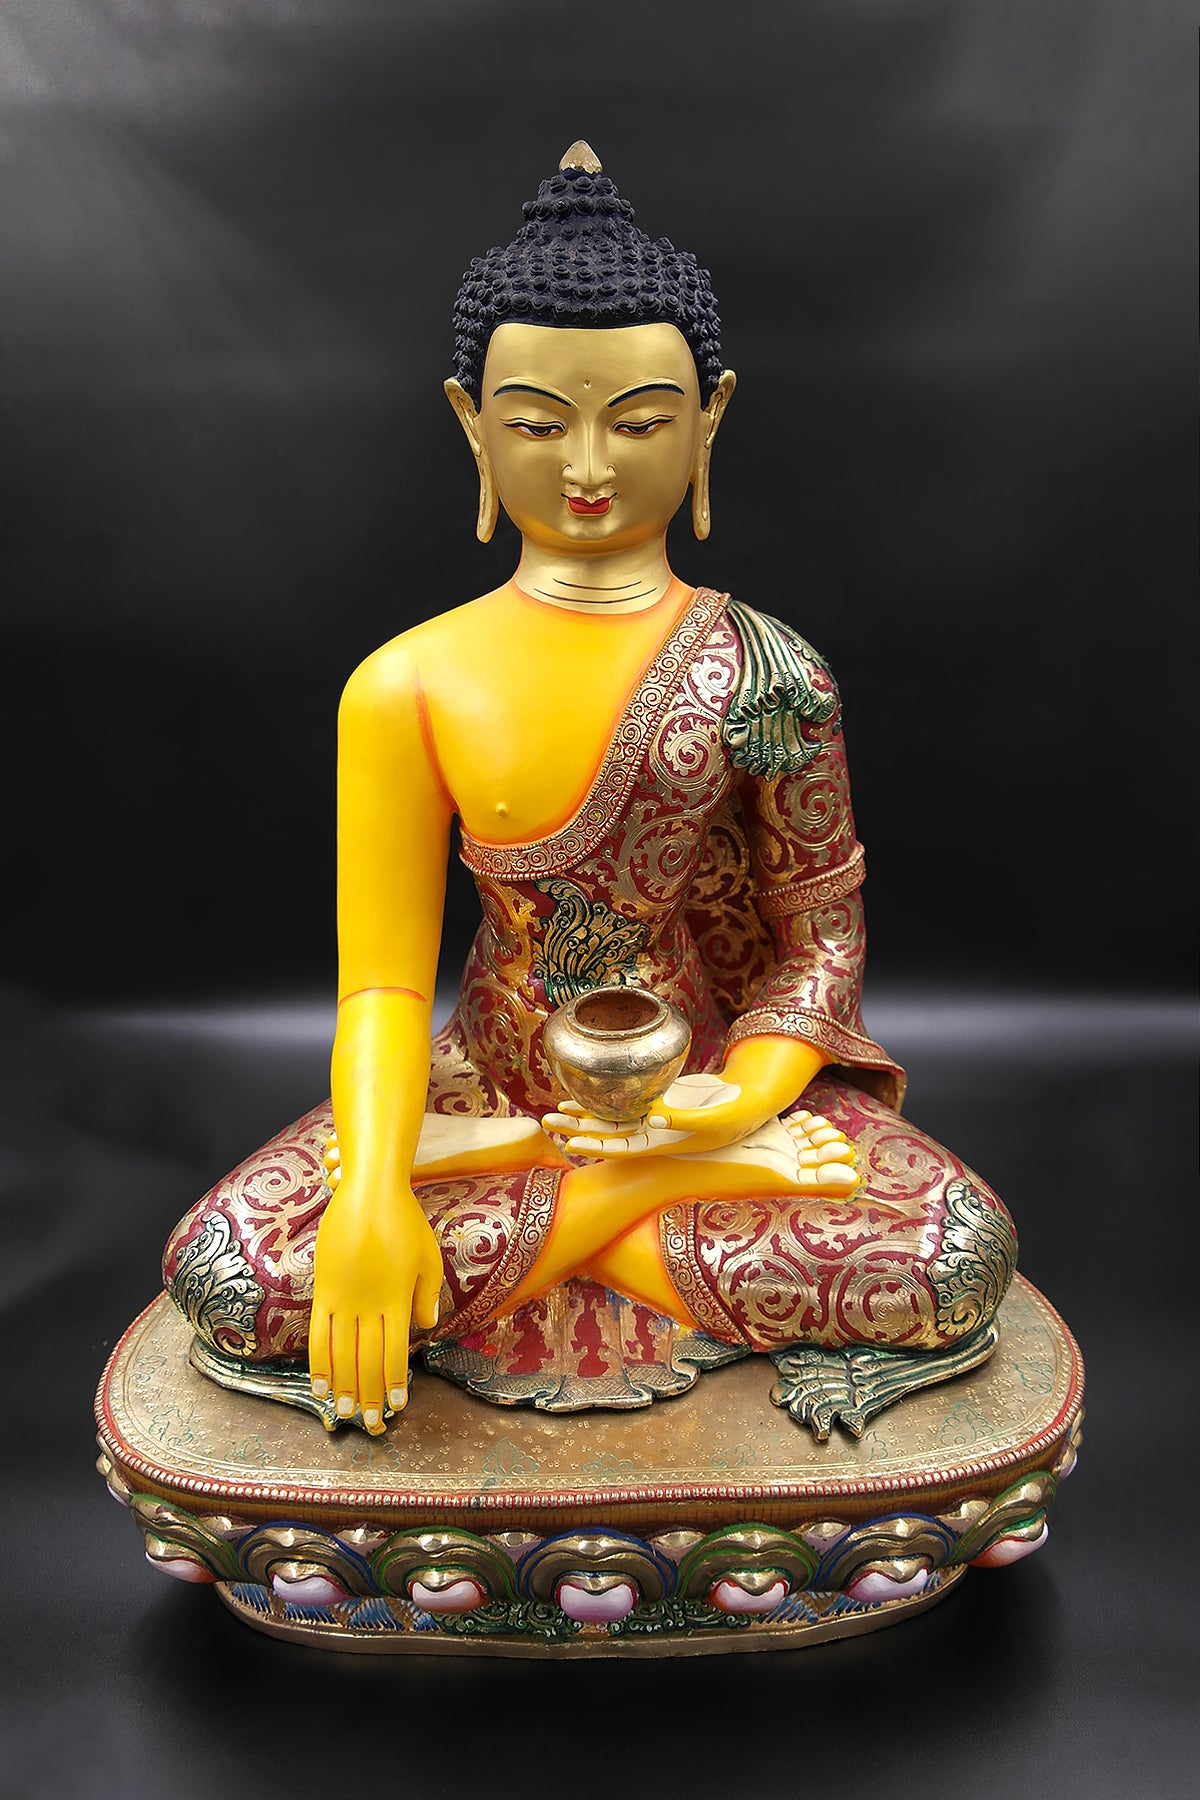 Colorful and Gold Plated Shakyamuni Buddha Statue 19"